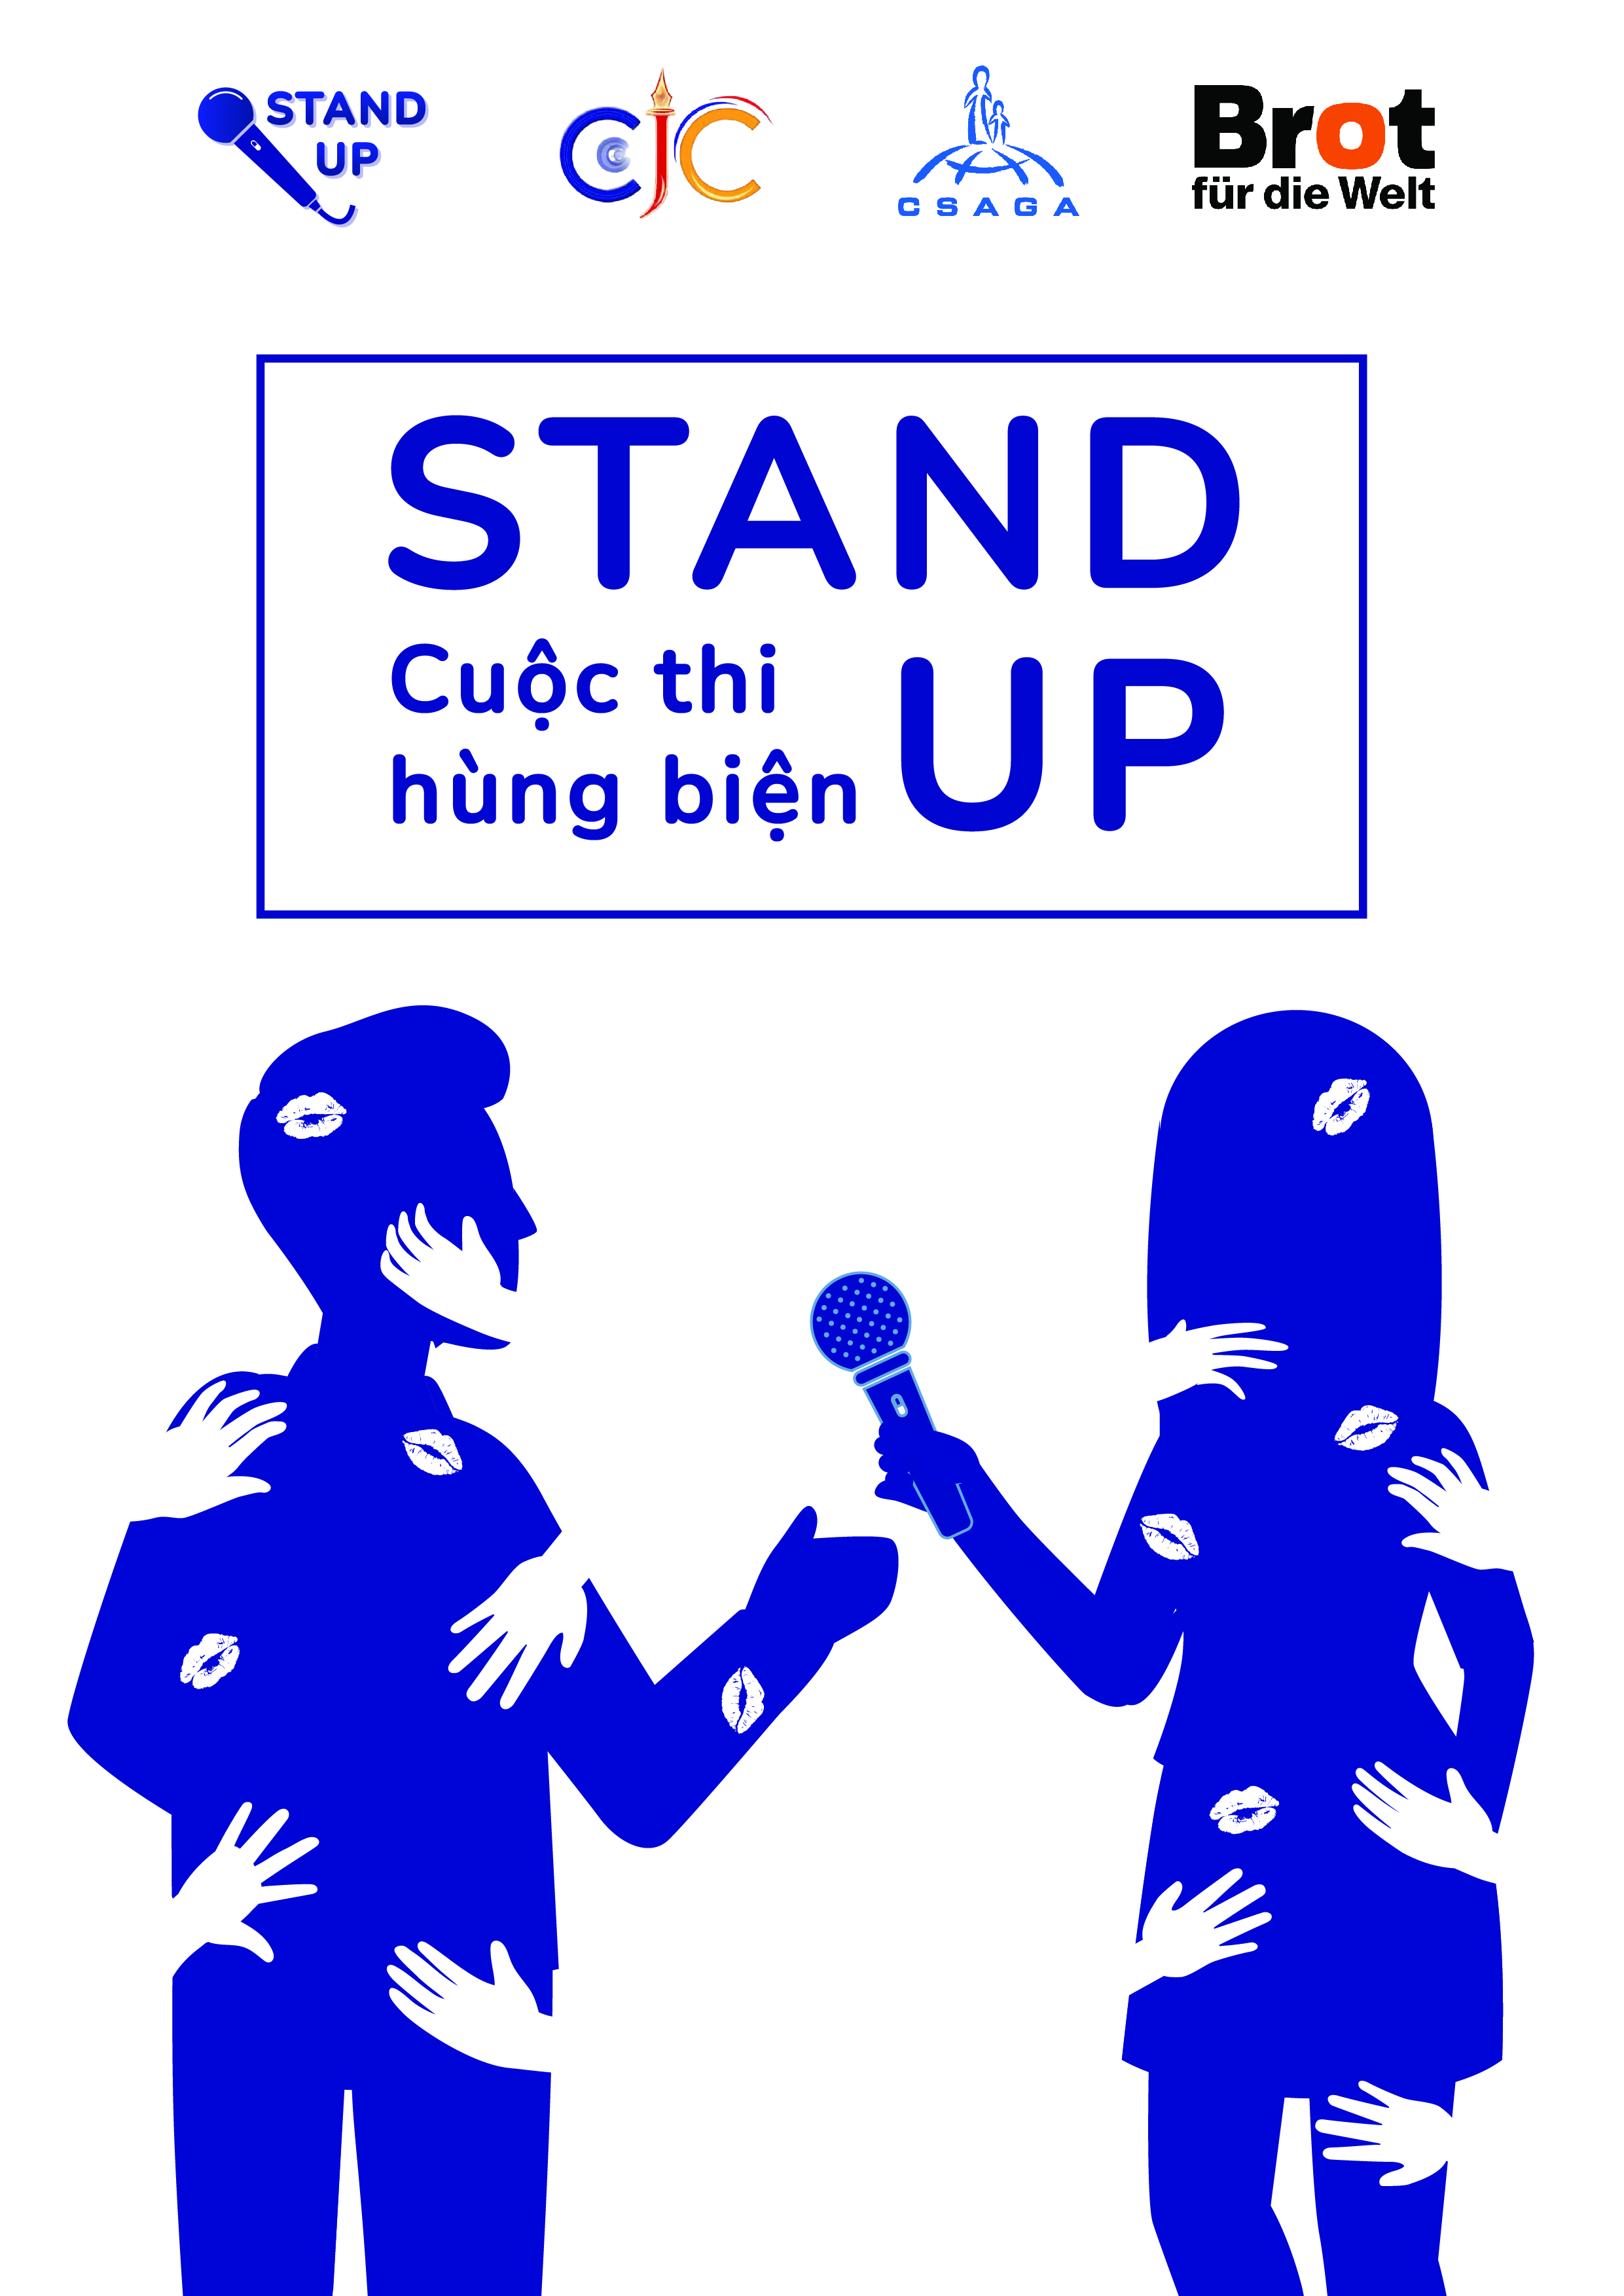 Cuộc thi Hùng biện Stand Up 2020: “Hãy tôn trọng. Chấm dứt quấy rối tình dục.”